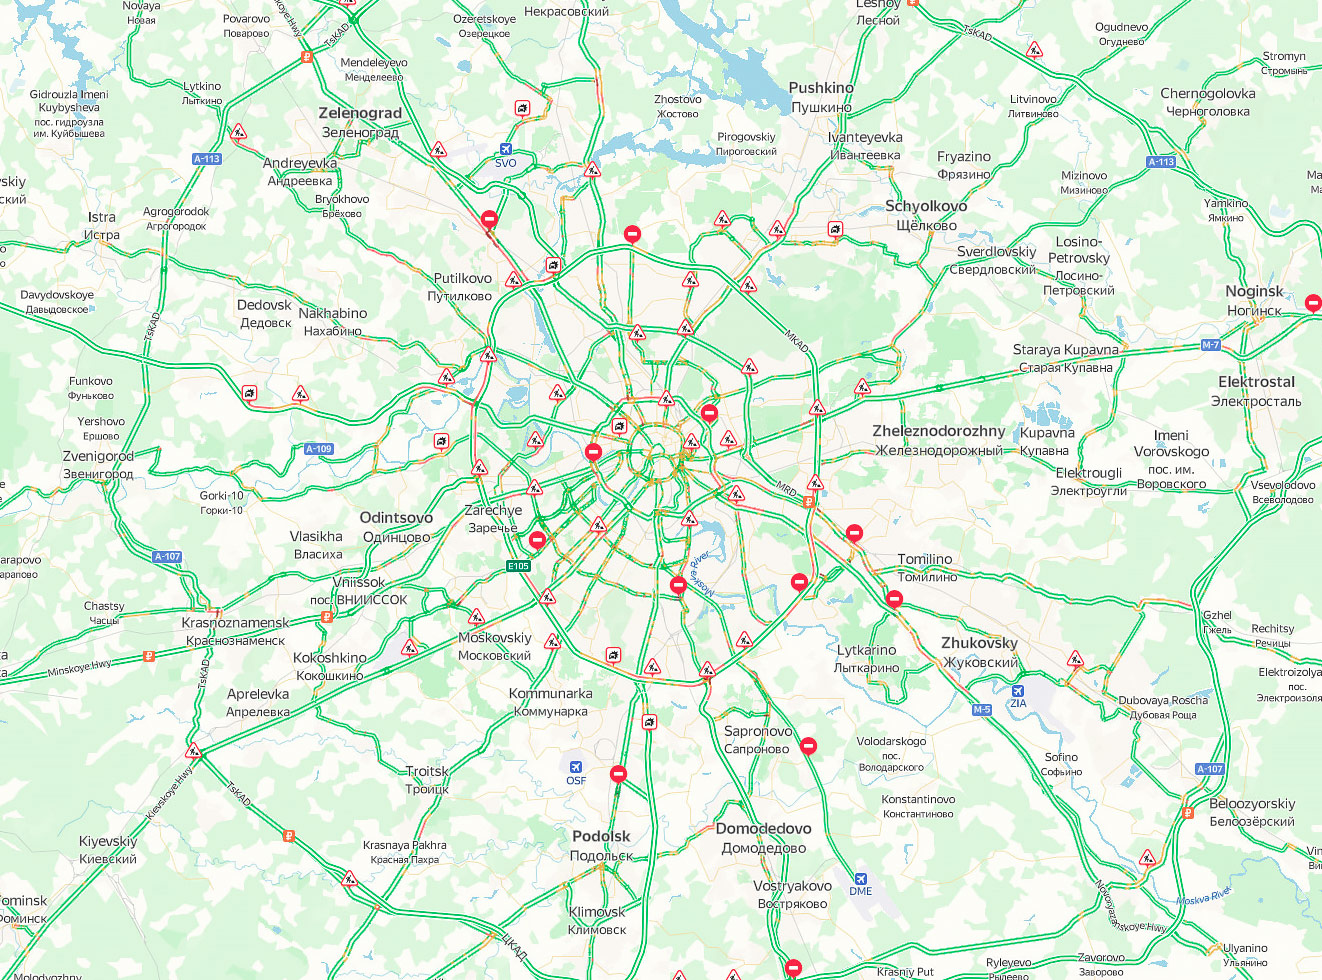 На въездах в Москву в 09:30 утра 26 июня наблюдались традиционные пробки почти на всех основных магистралях